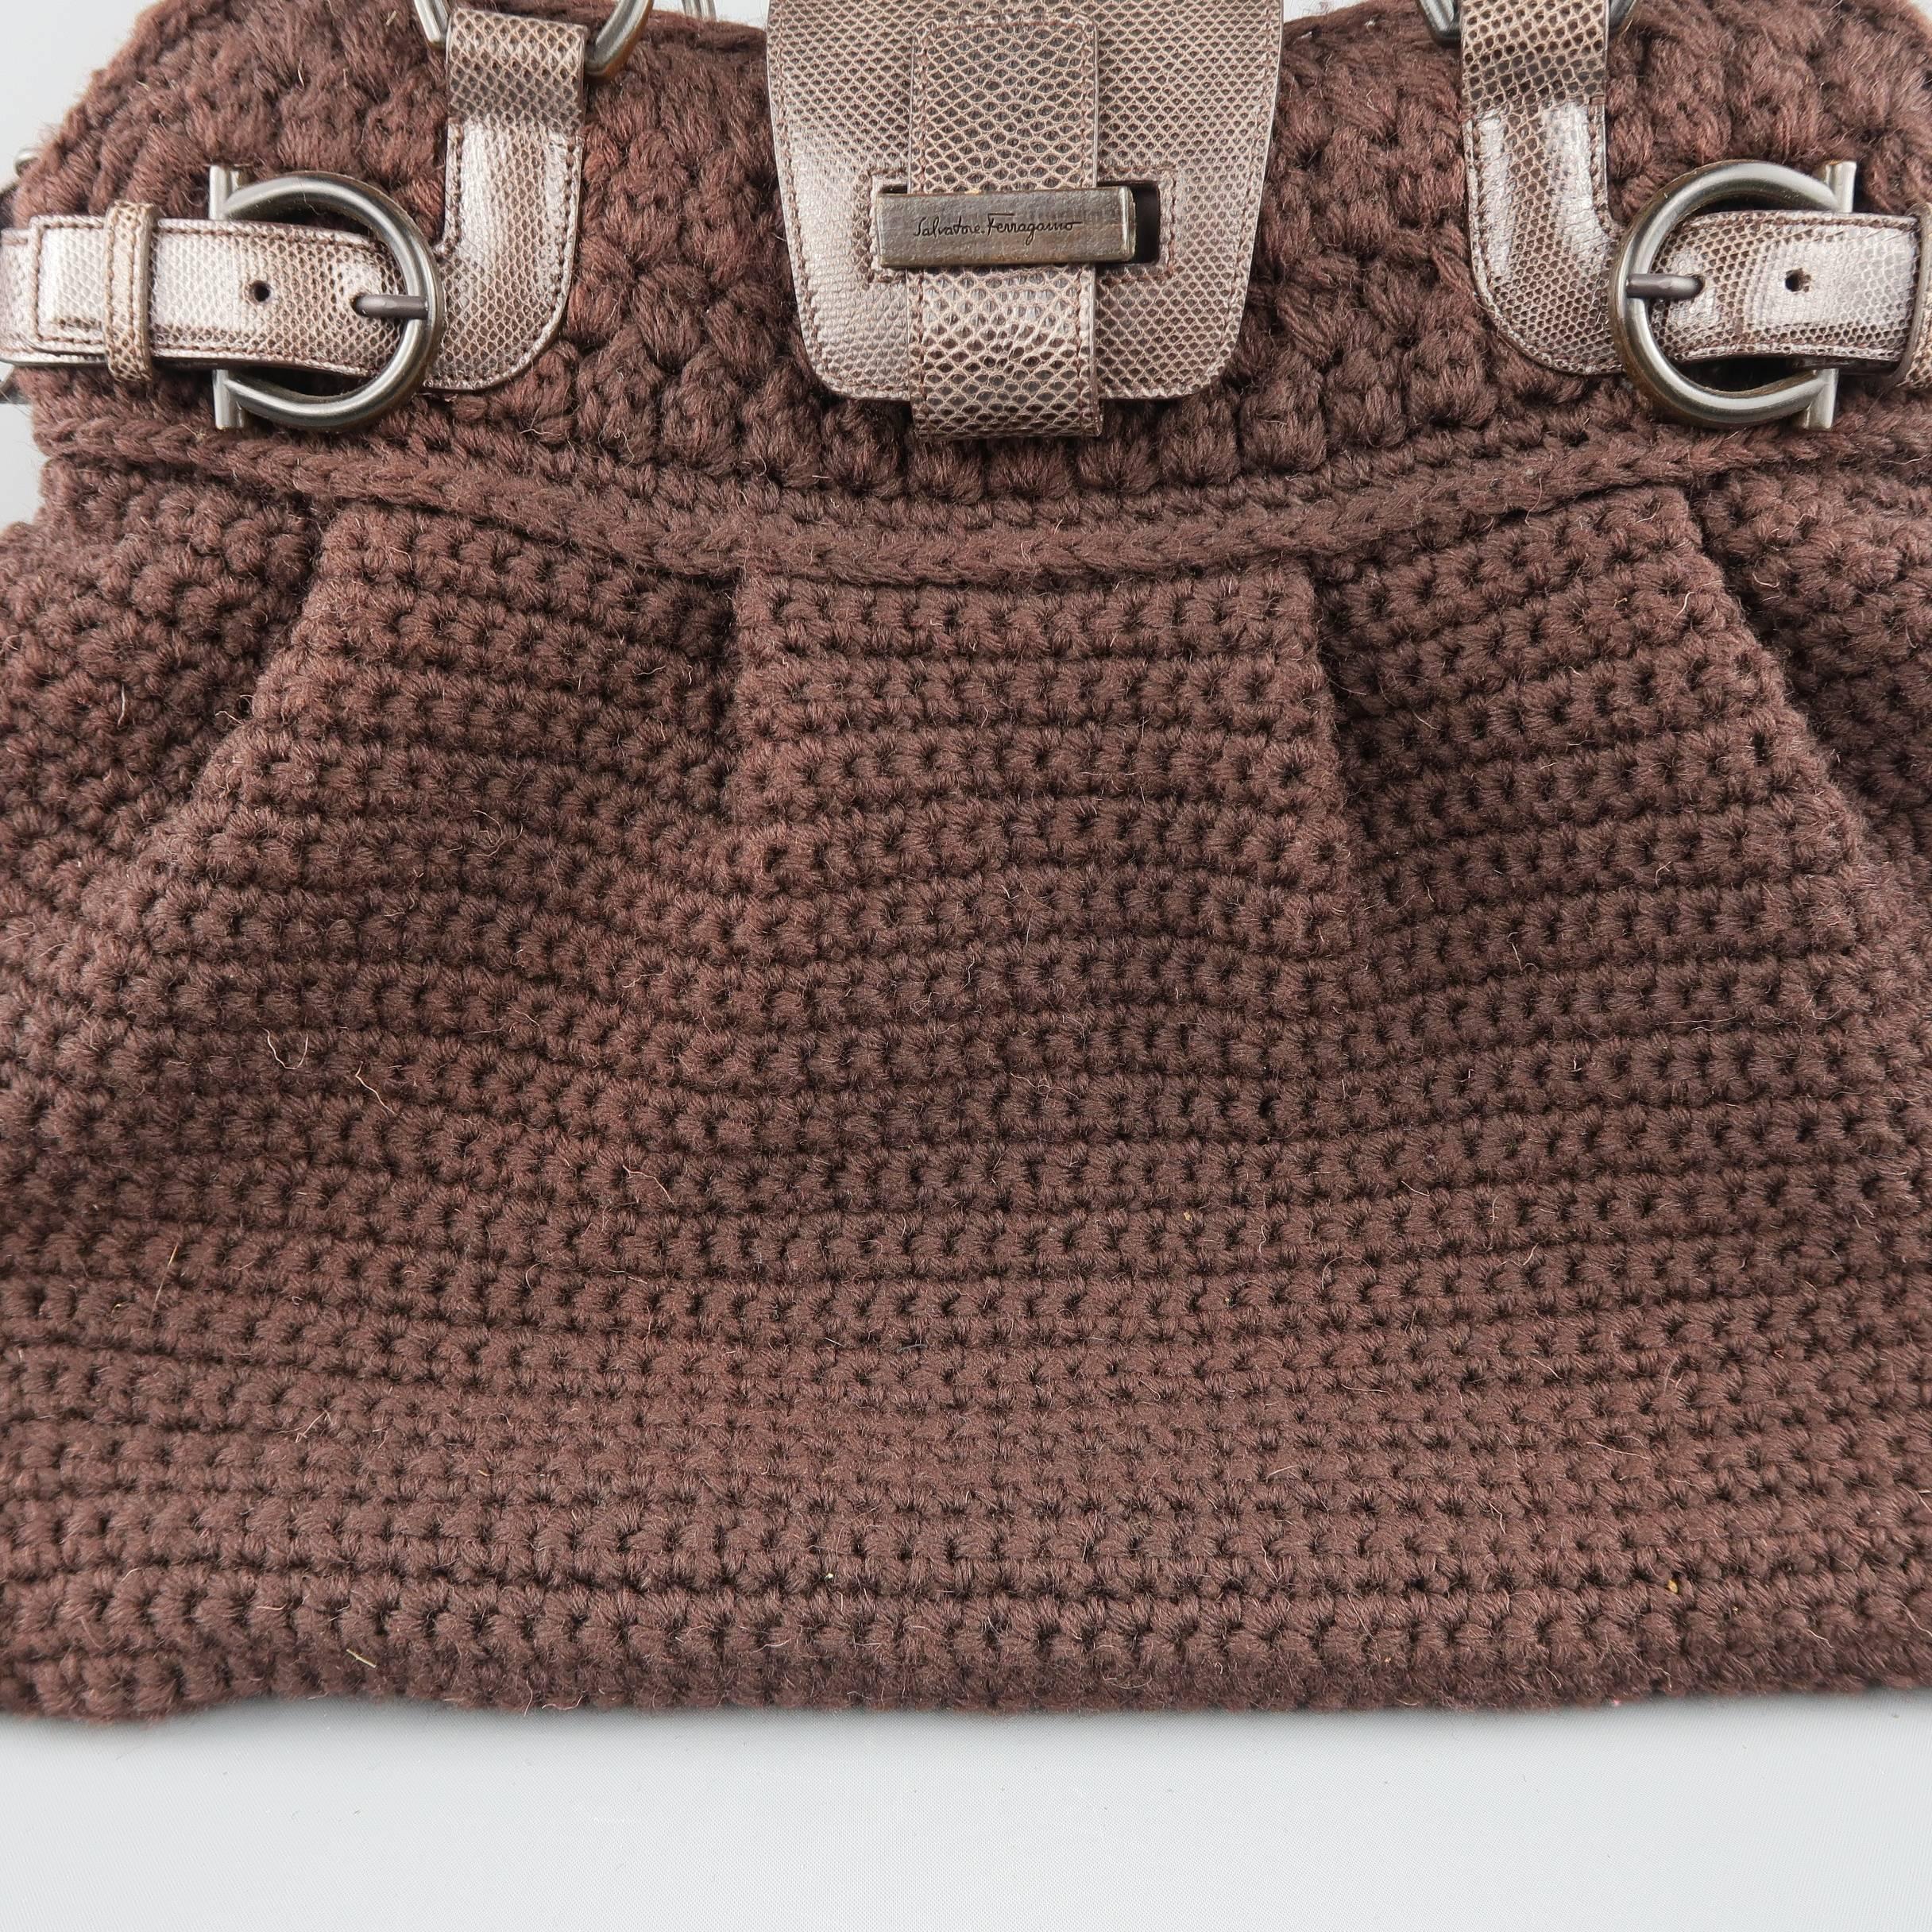 knit handbags